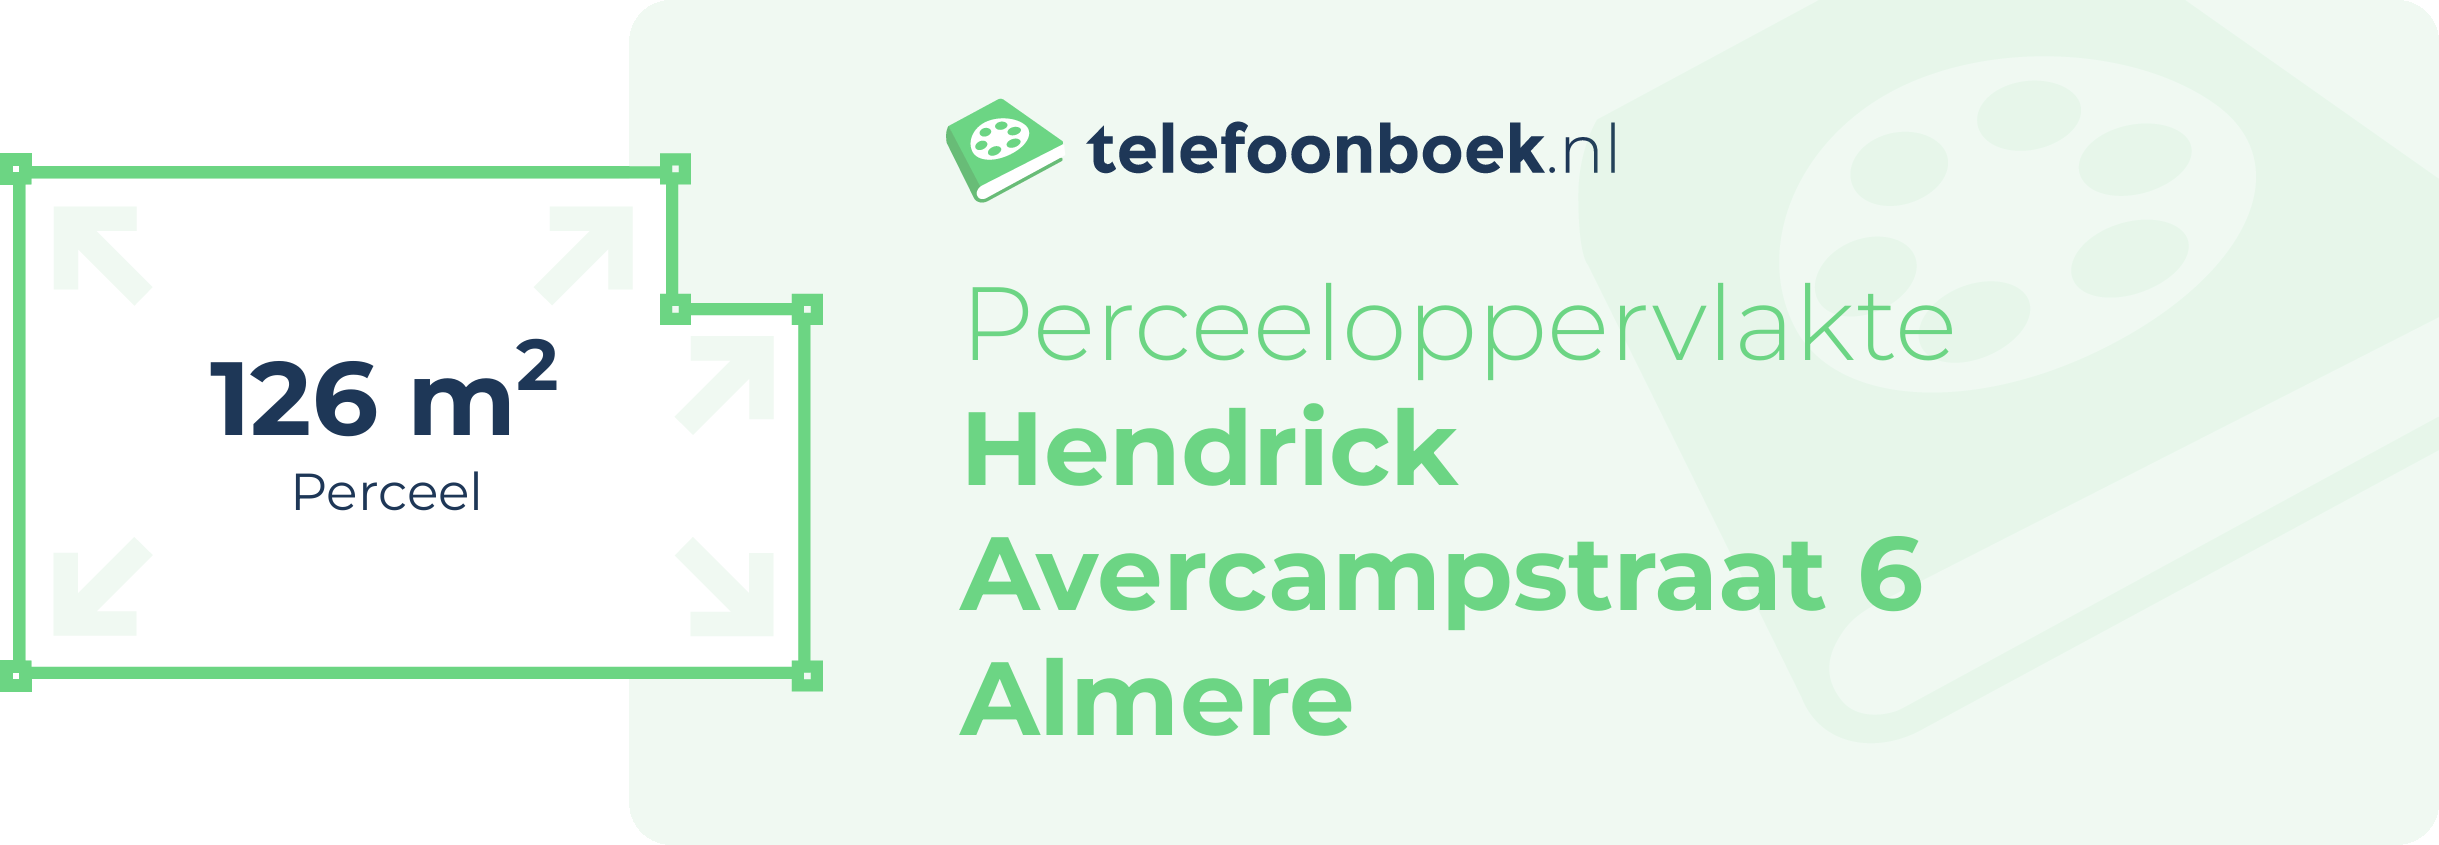 Perceeloppervlakte Hendrick Avercampstraat 6 Almere